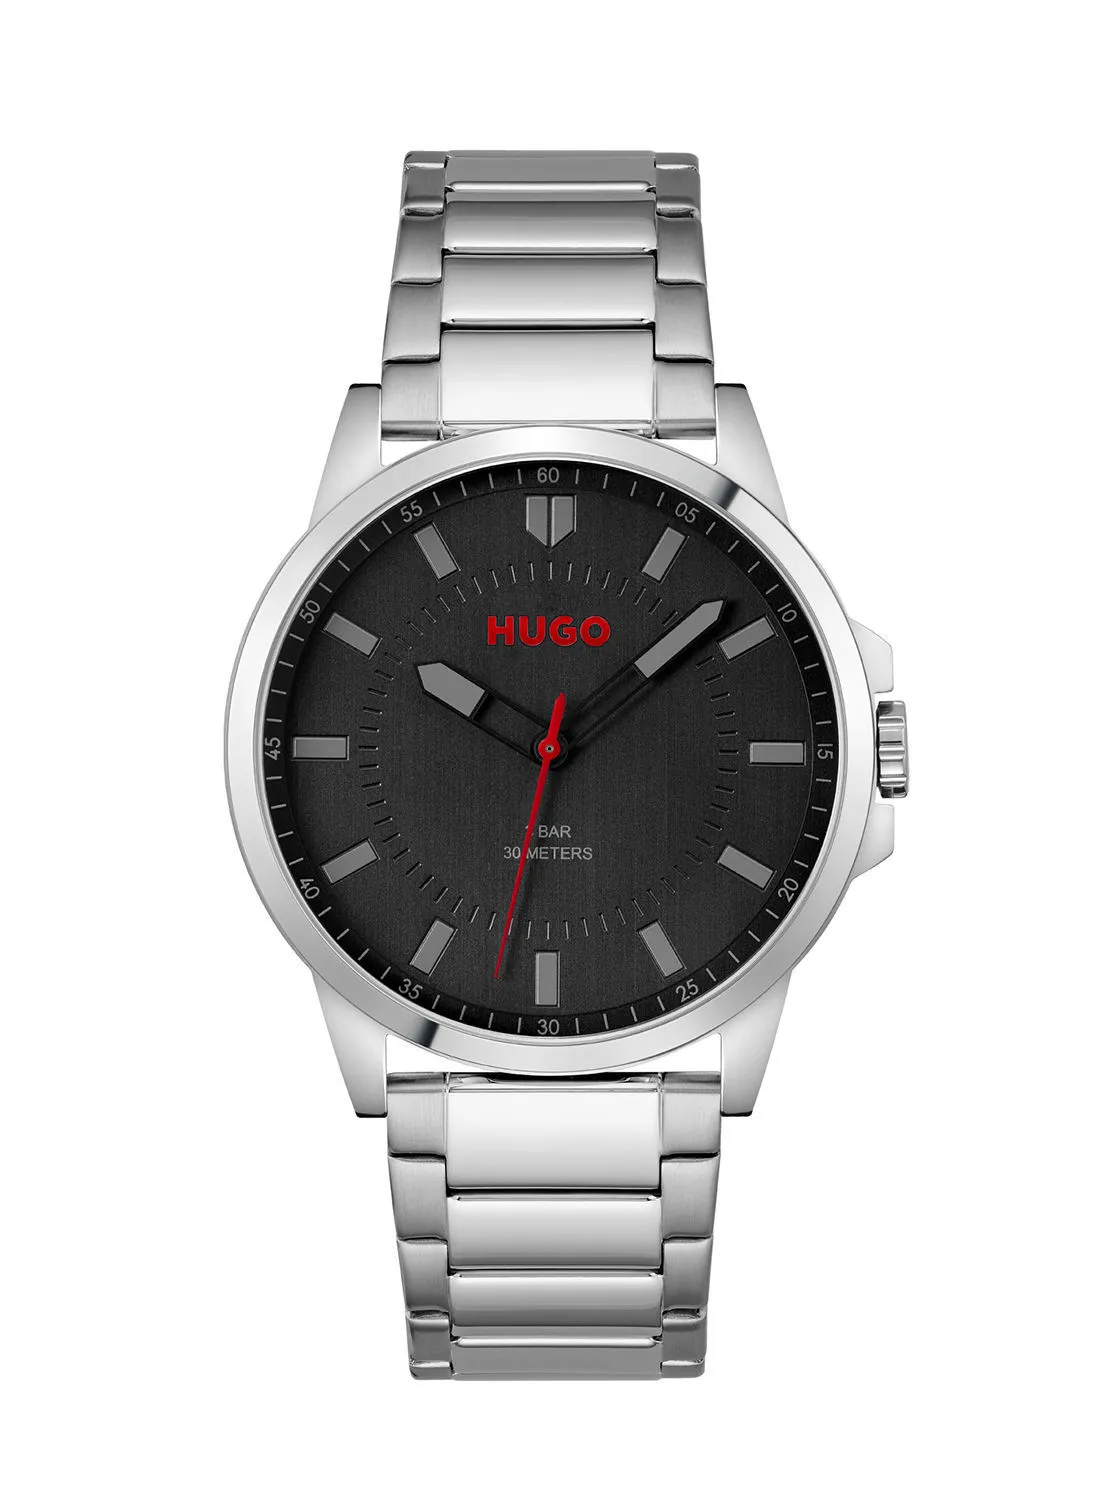 HUGO BOSS Men's First Black Dial Wrist Watch - 1530246